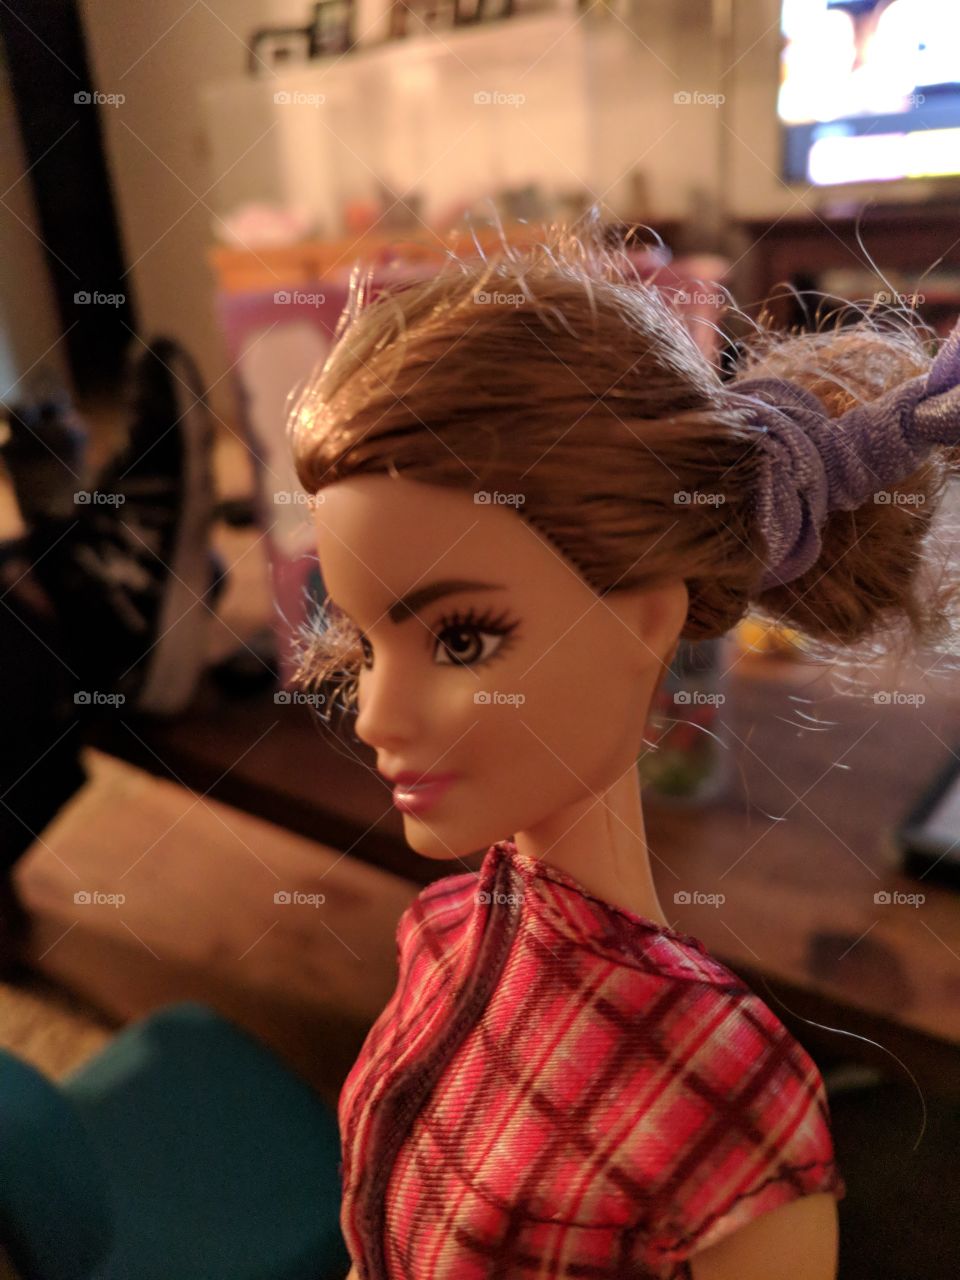 Barbie fun